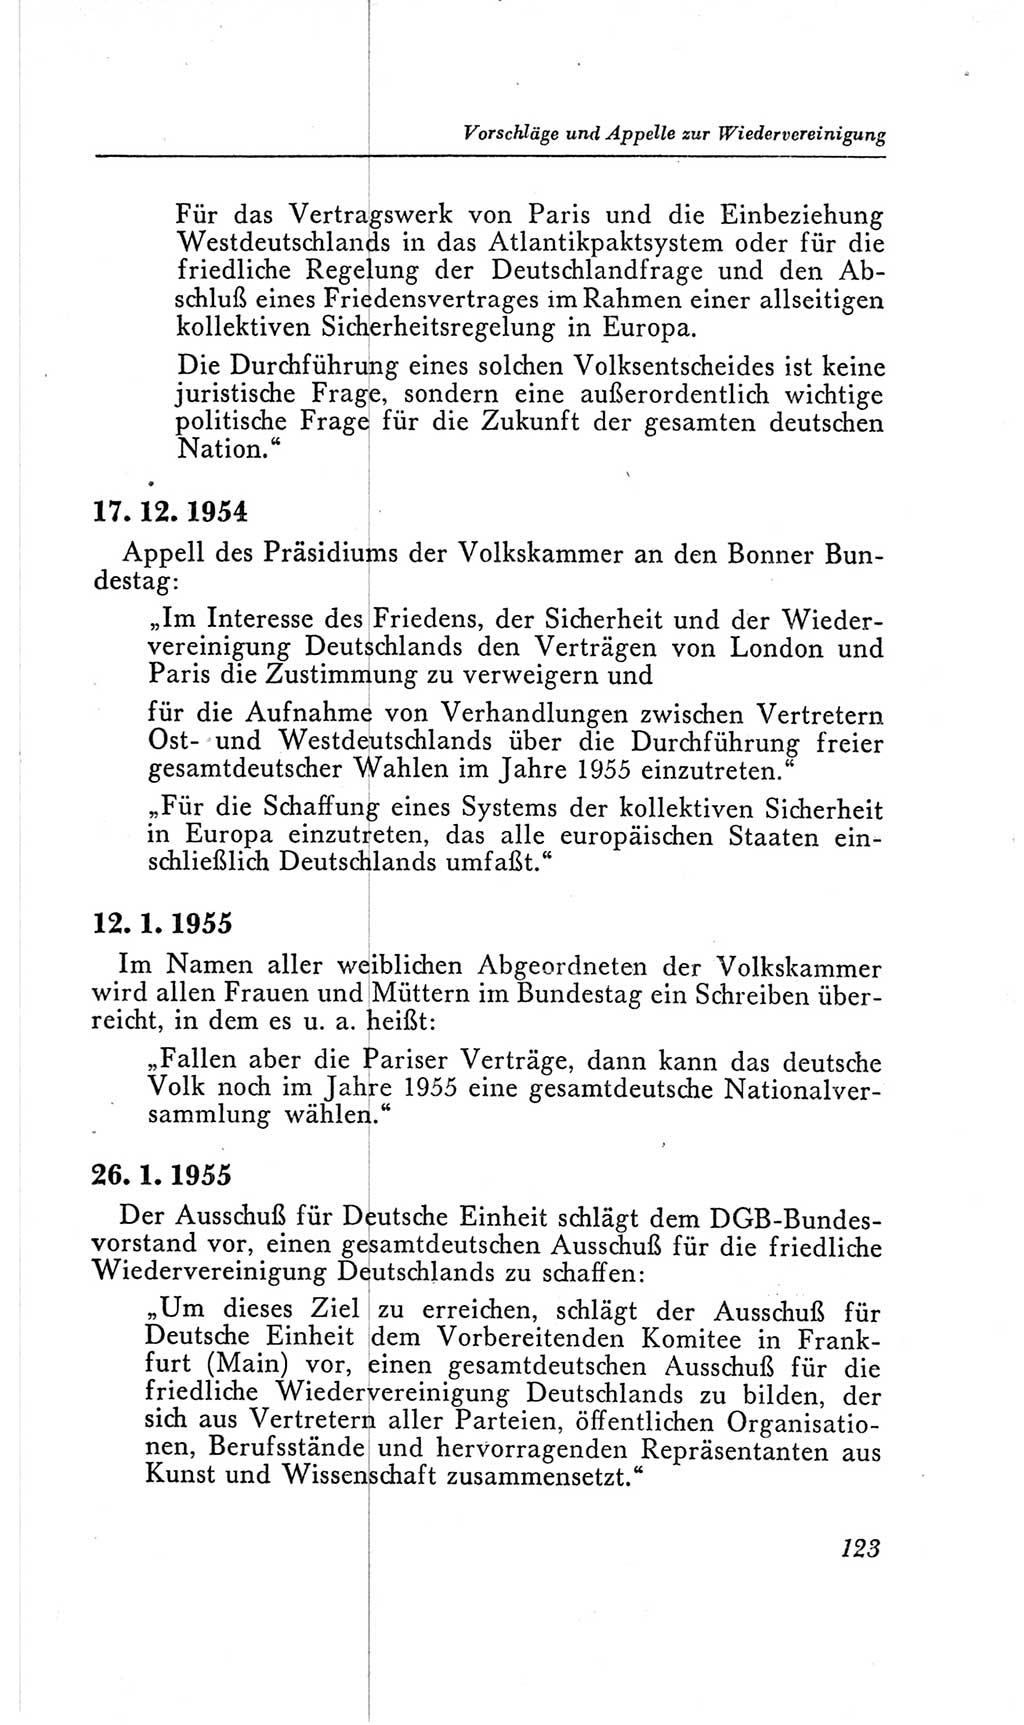 Handbuch der Volkskammer (VK) der Deutschen Demokratischen Republik (DDR), 2. Wahlperiode 1954-1958, Seite 123 (Hdb. VK. DDR, 2. WP. 1954-1958, S. 123)